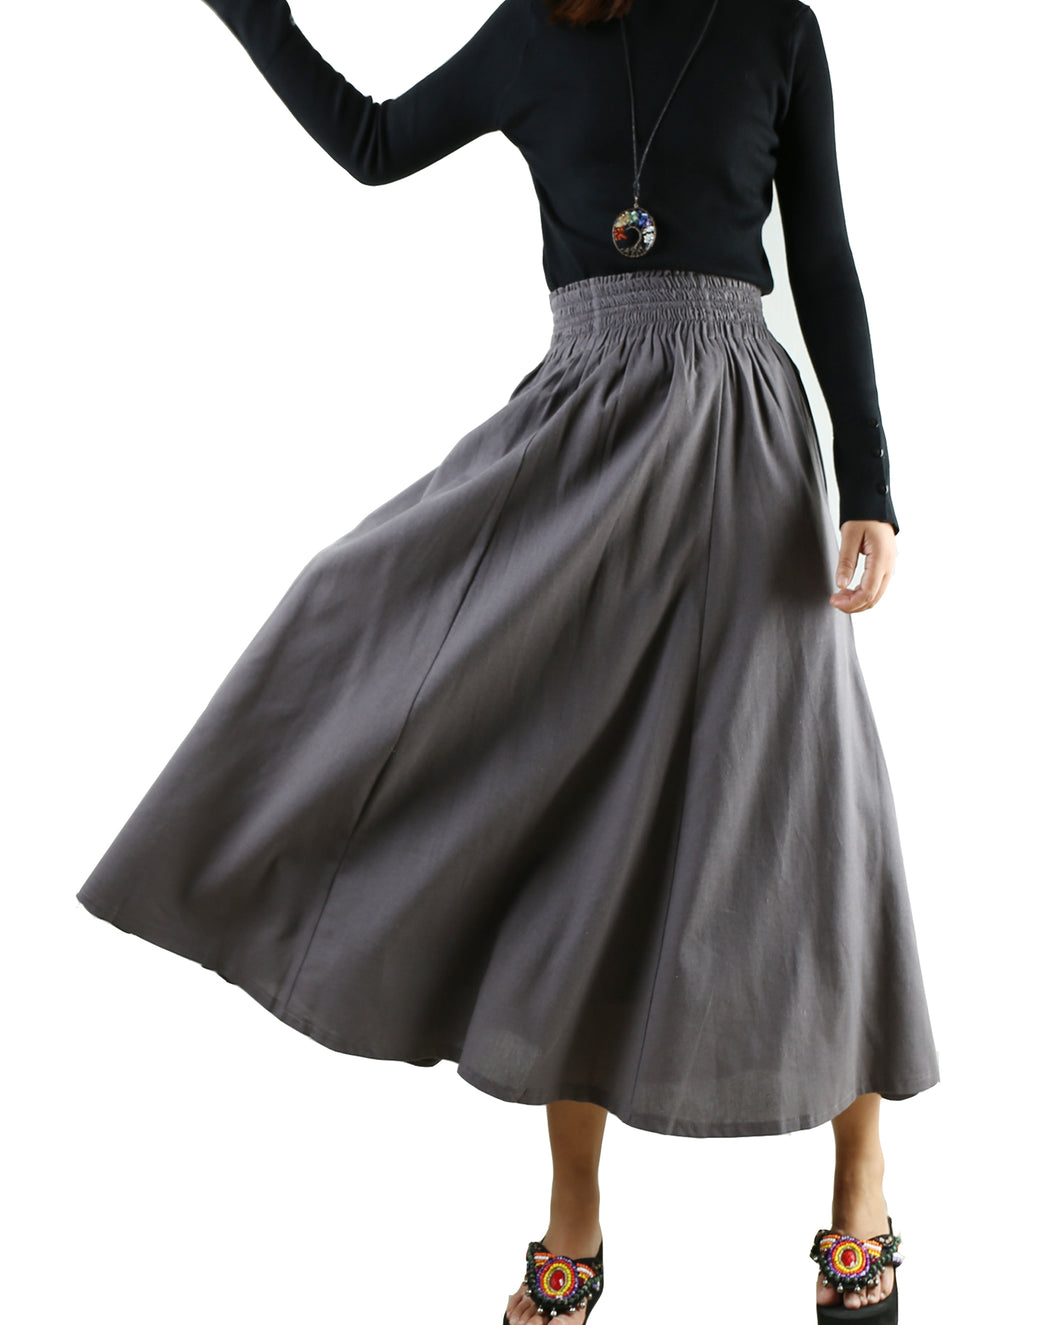 high waist skirt, linen skirt, maxi skirt, elastic waist skirt, long skirt, flared skirt(Q1989) - lijingshop